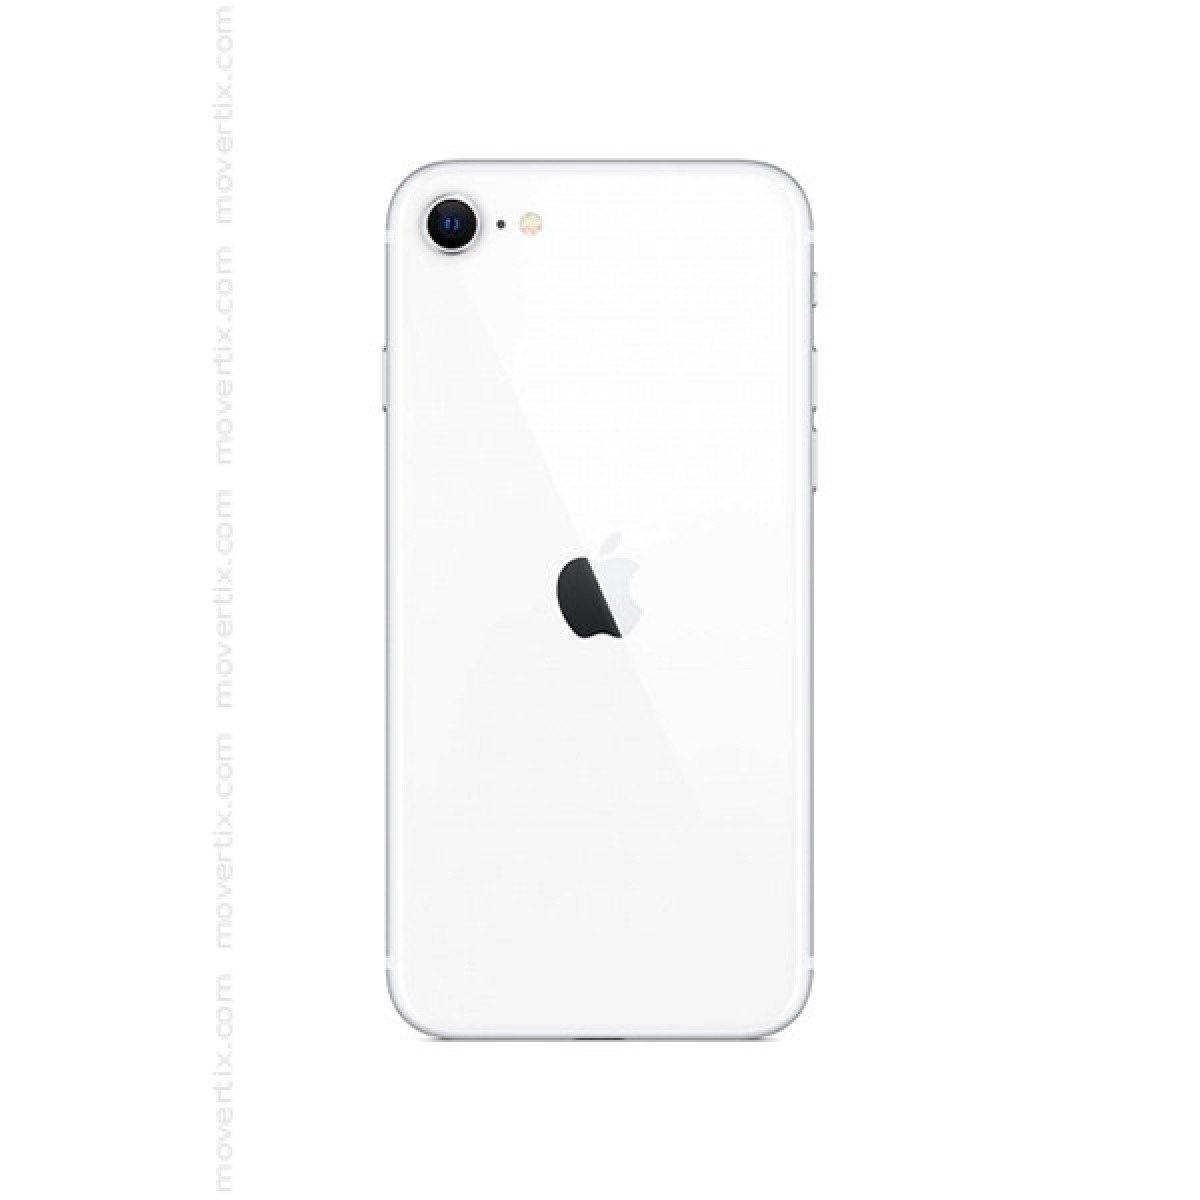 2020 iphone se iPhone SE: